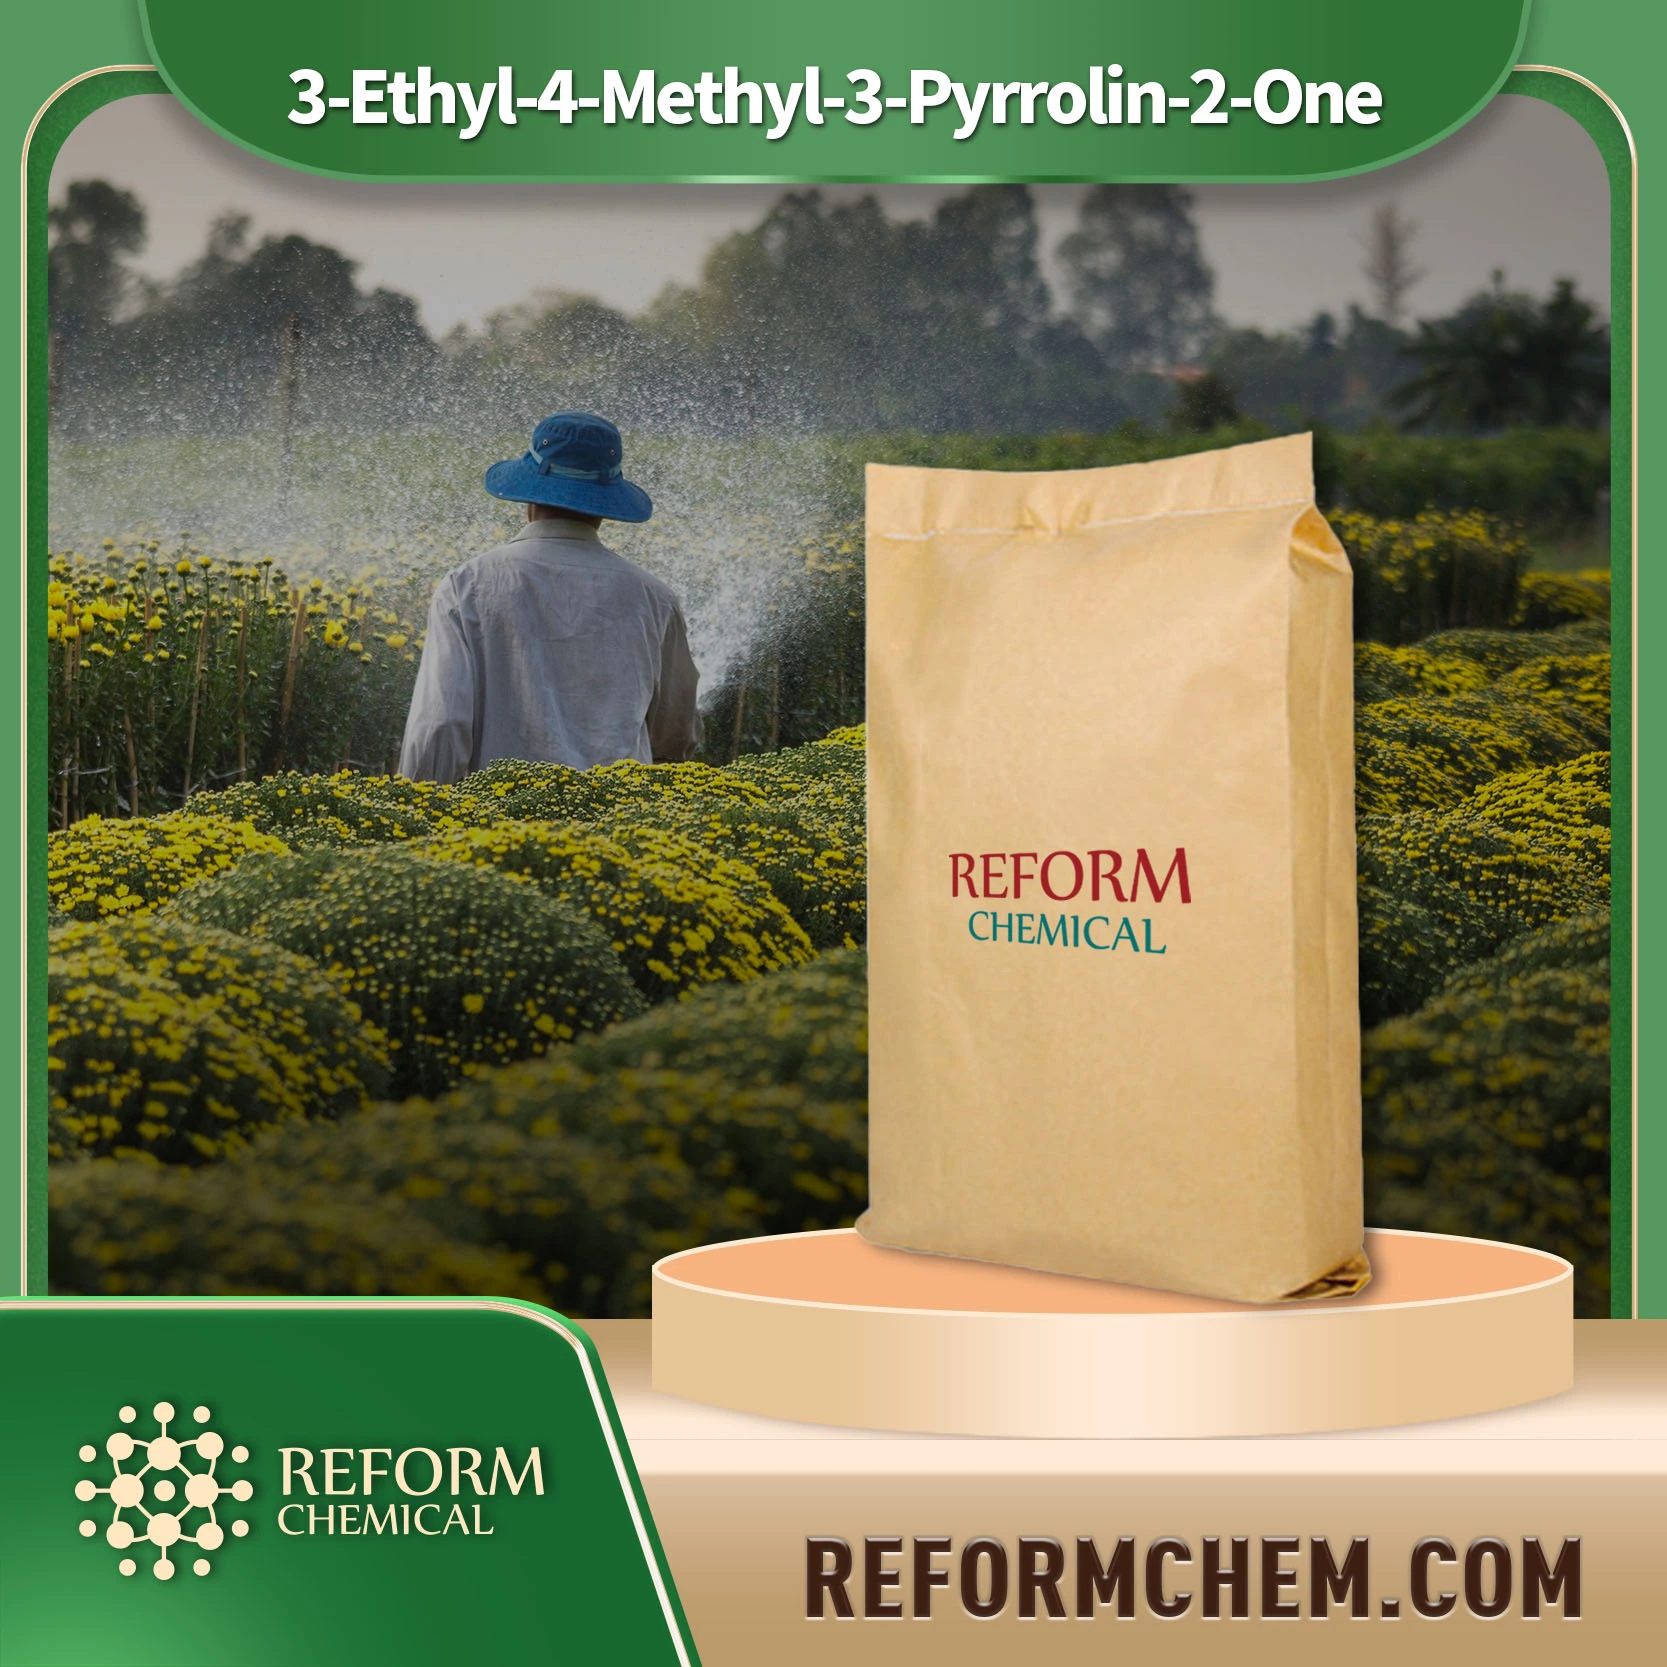 3-Ethyl-4-Methyl-3-Pyrrolin-2-One